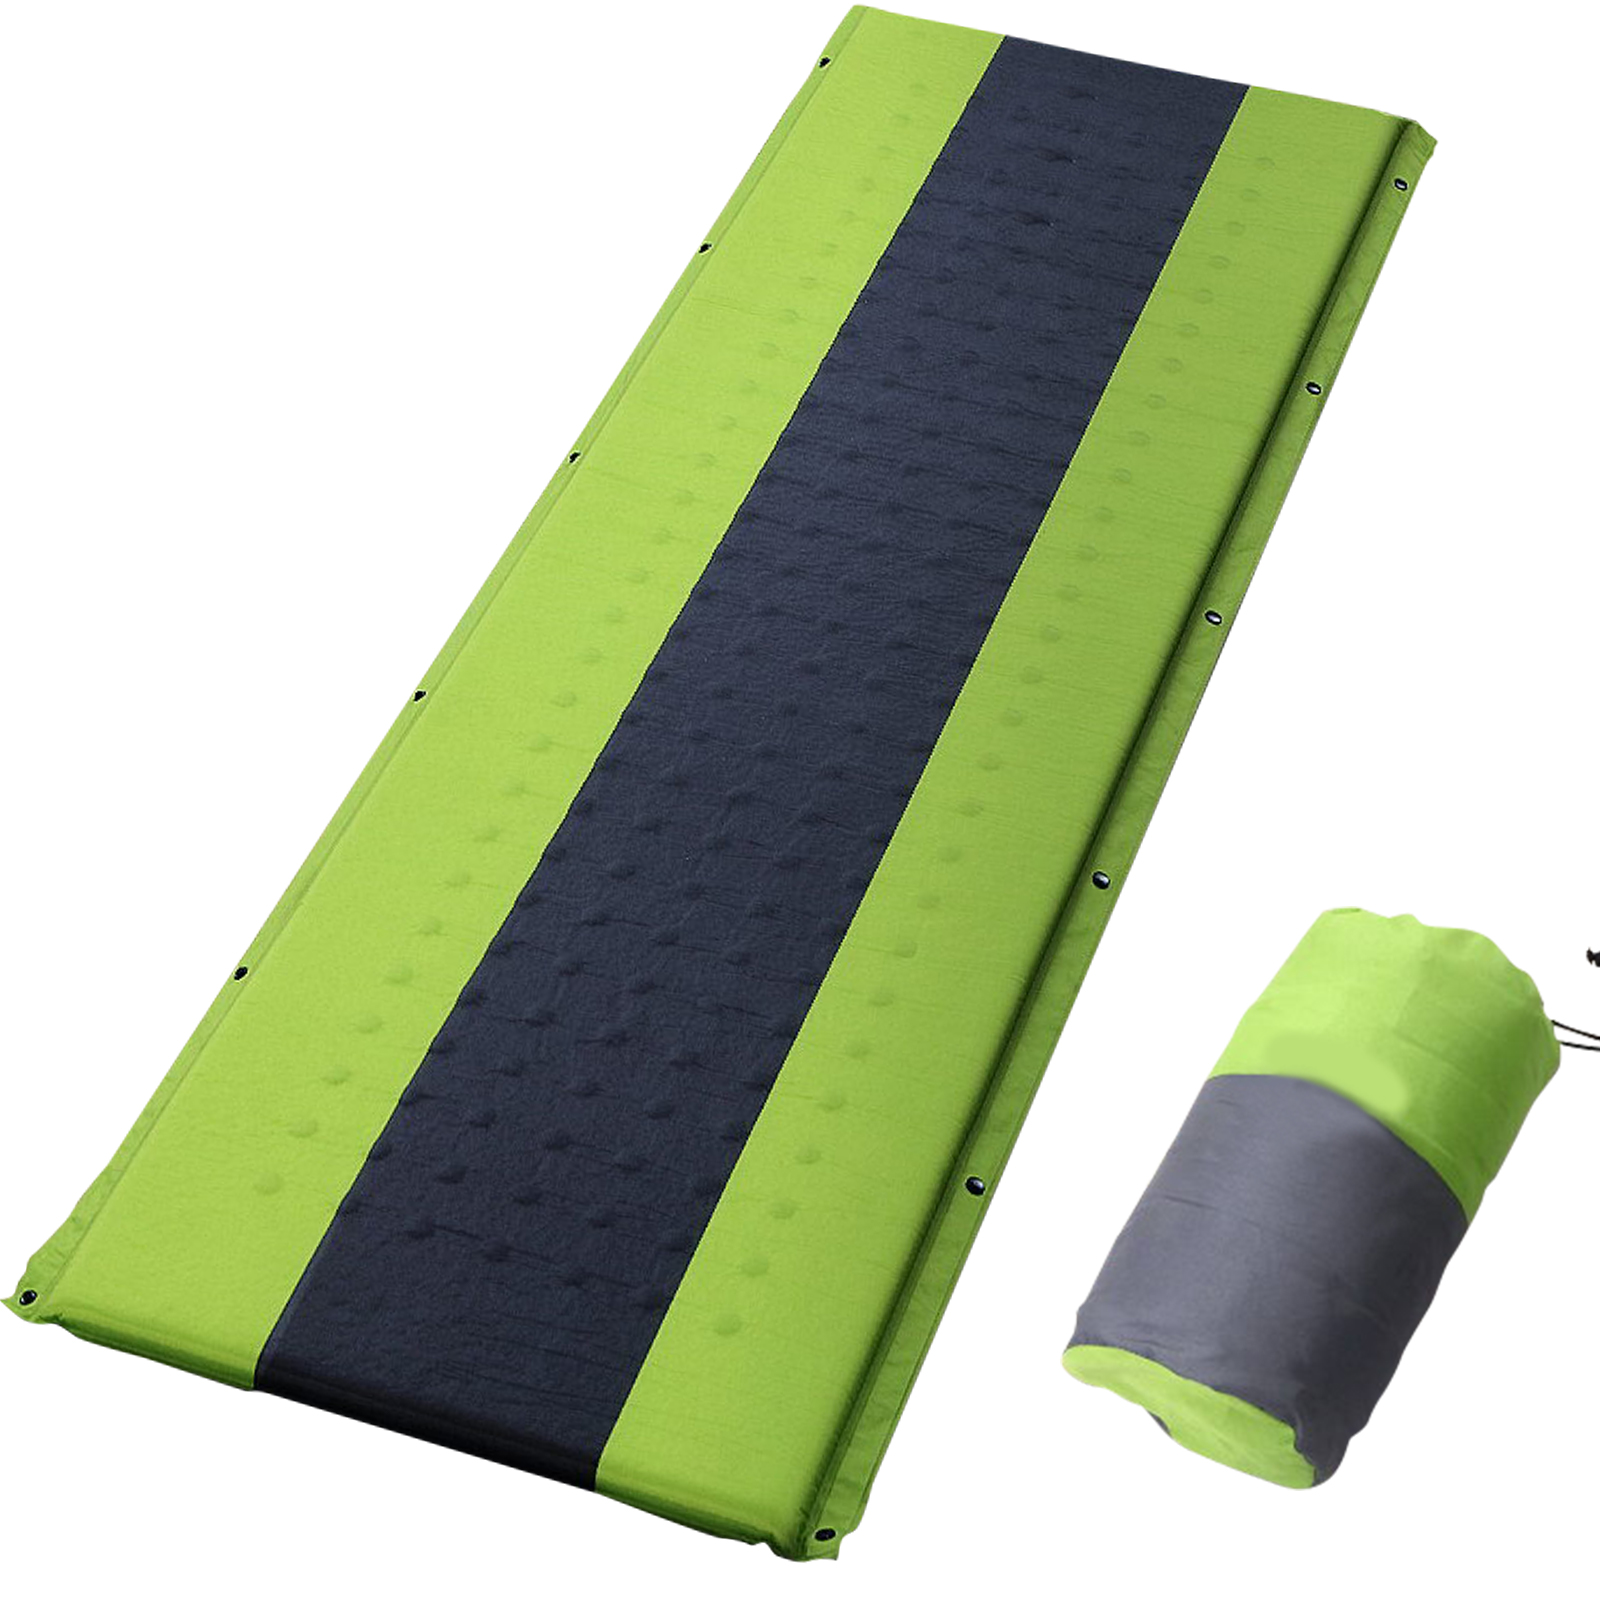 Single Size Self Inflating Mattress Bed Camping Sleeping Mat Air Bed Pad Green